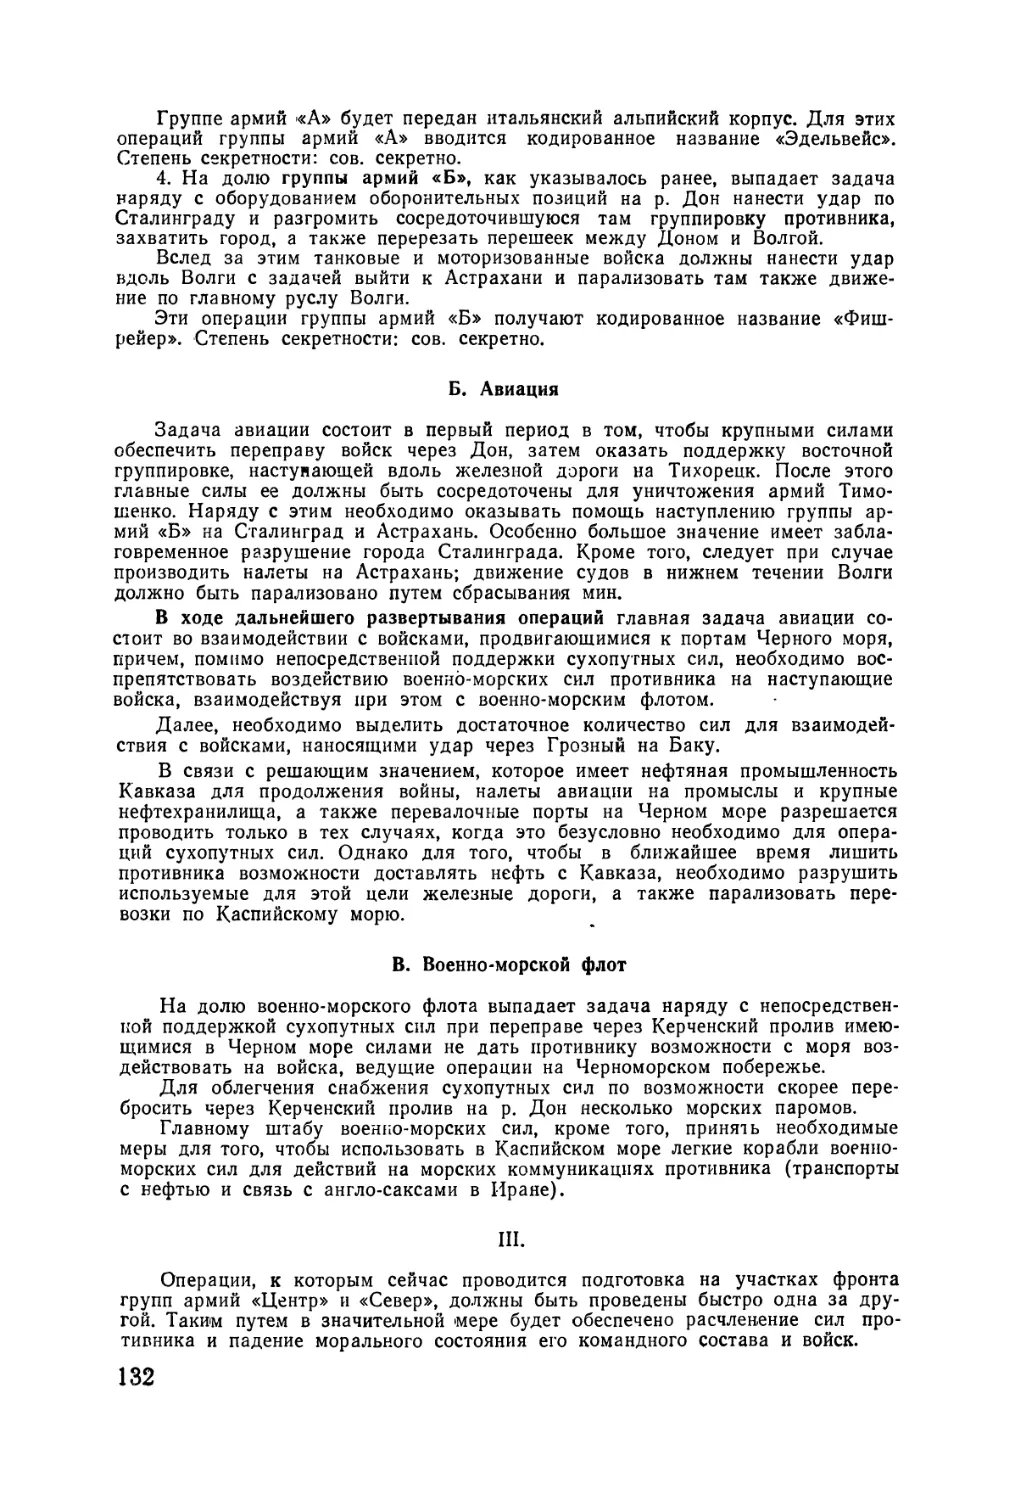 Приложение 3. Приказ армии о наступлении на Сталинград